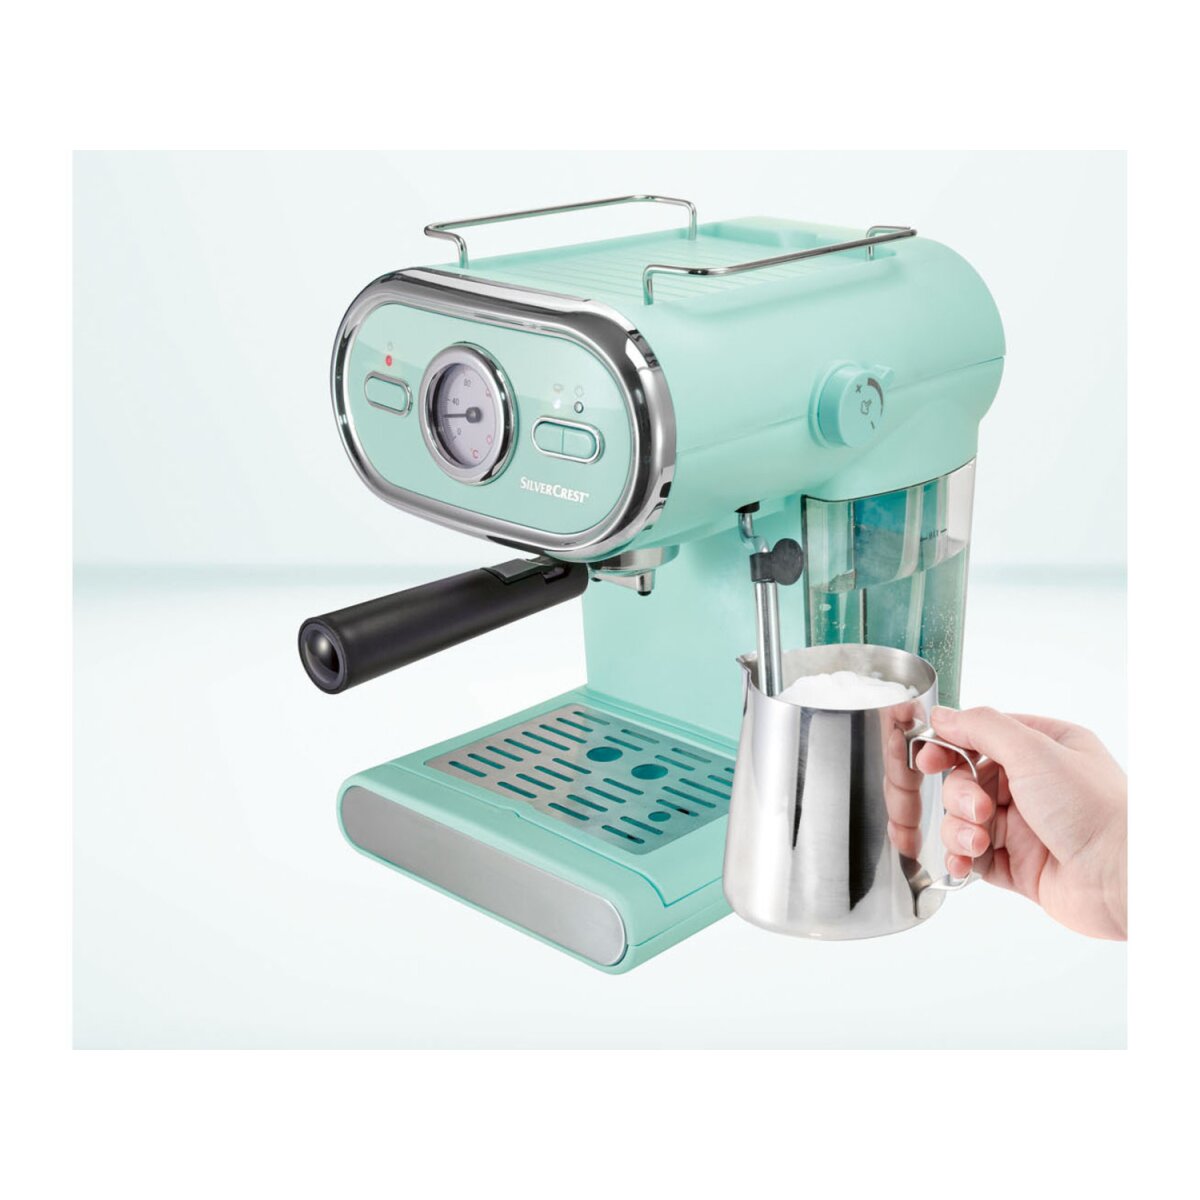 SILVERCREST® KITCHEN TOOLS Espressomaschine/Siebträger Pastell mint B-Ware 1100 D3 € SEM gut, - 44,99